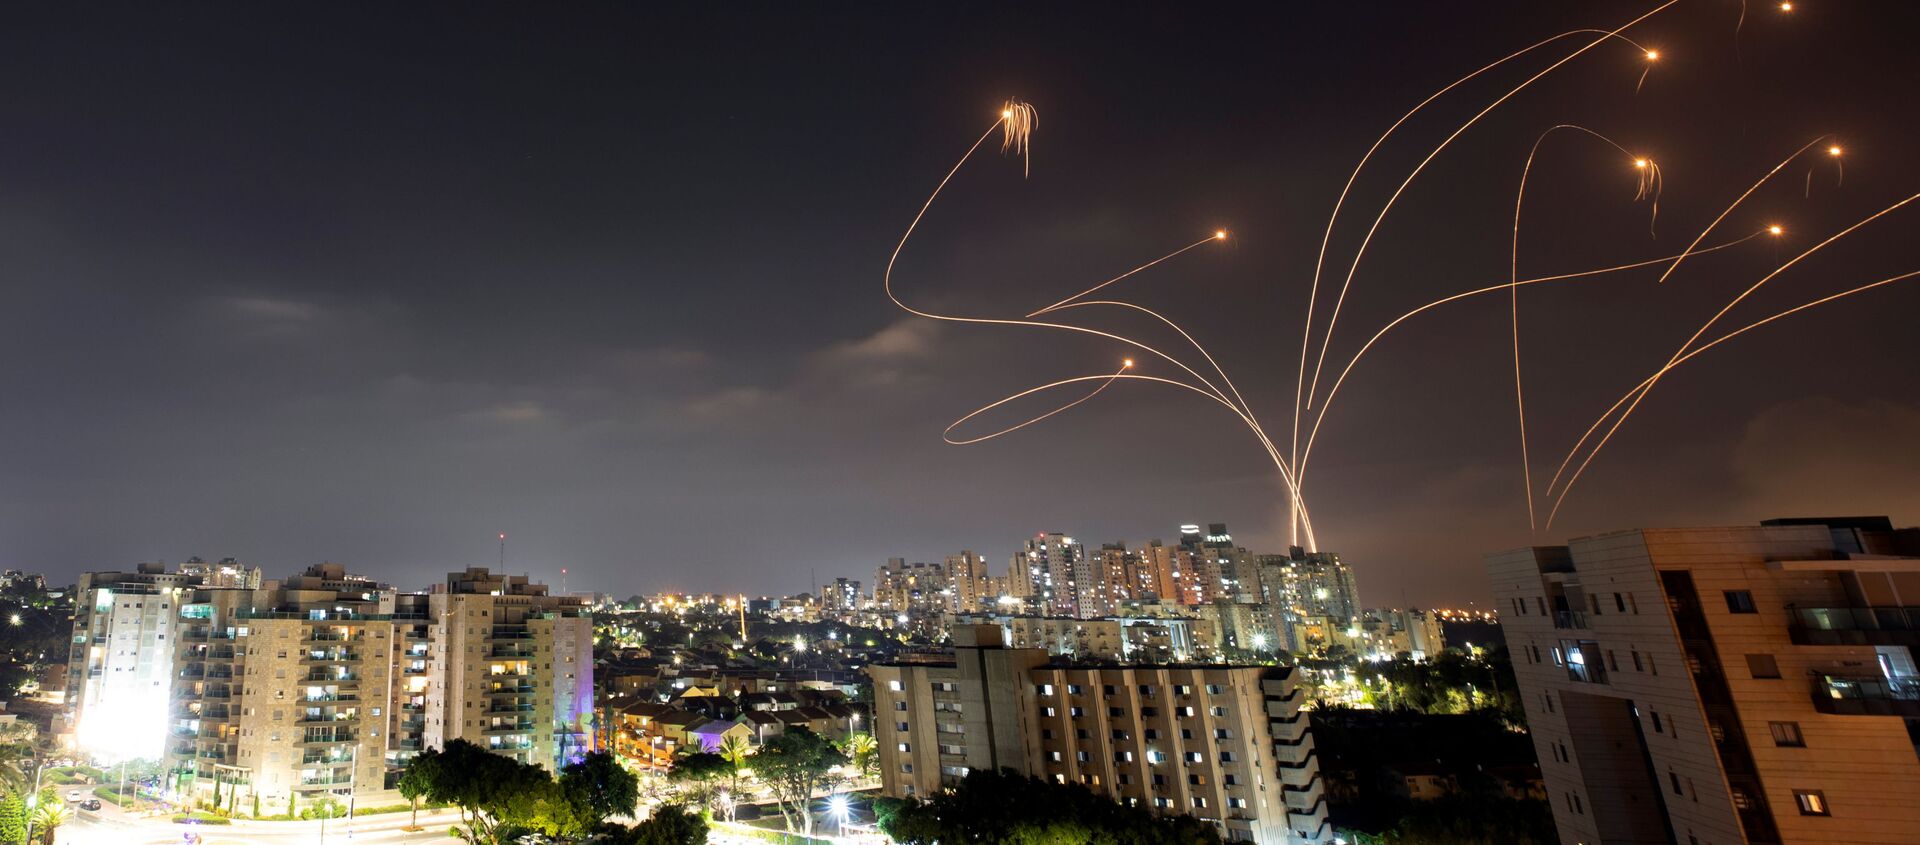 Израильская противоракетная система Железный купол перехватывает ракеты, запущенные из сектора Газа в направлении Израиля - Sputnik Молдова, 1920, 12.05.2021